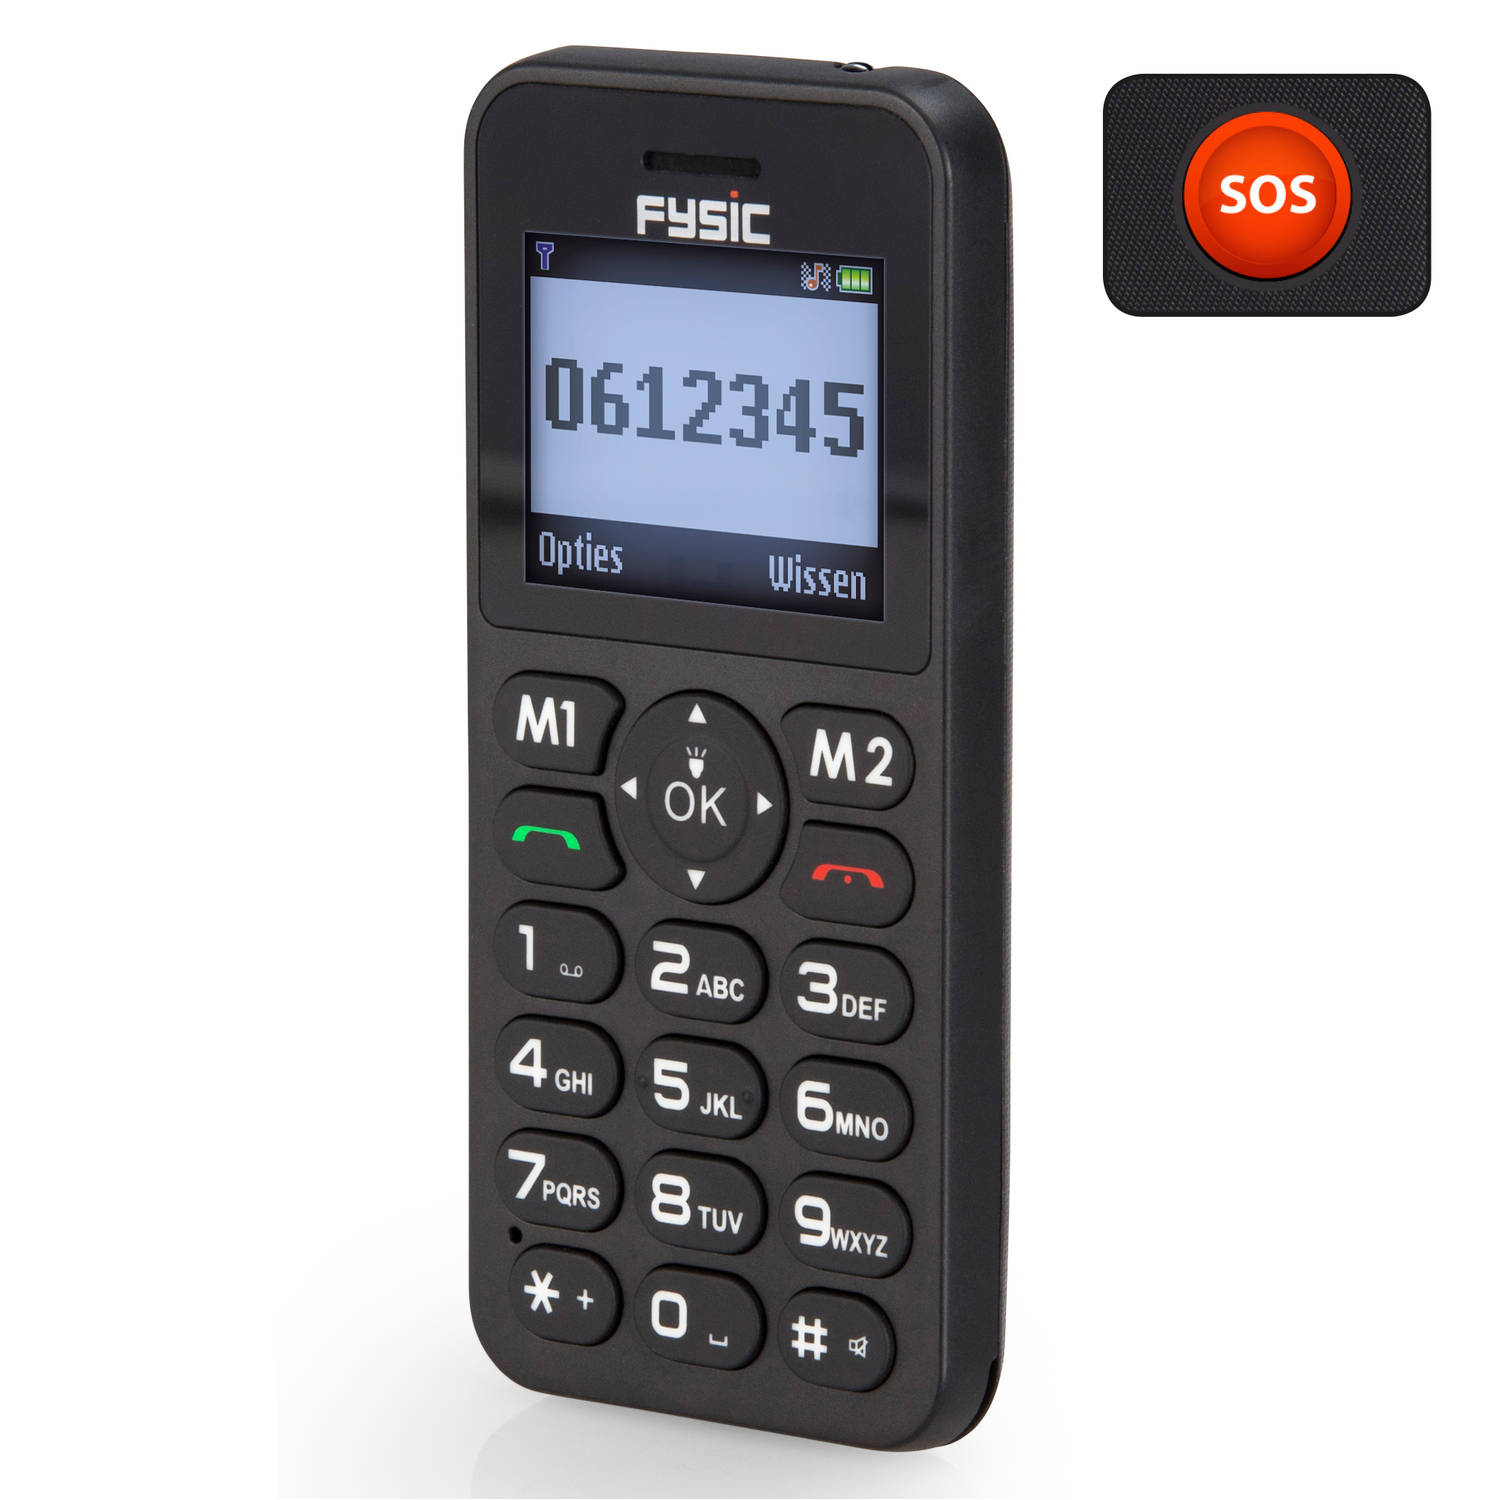 Fysic FM-7550 - Eenvoudige mobiele telefoon voor senioren met SOS noodknop, zwart